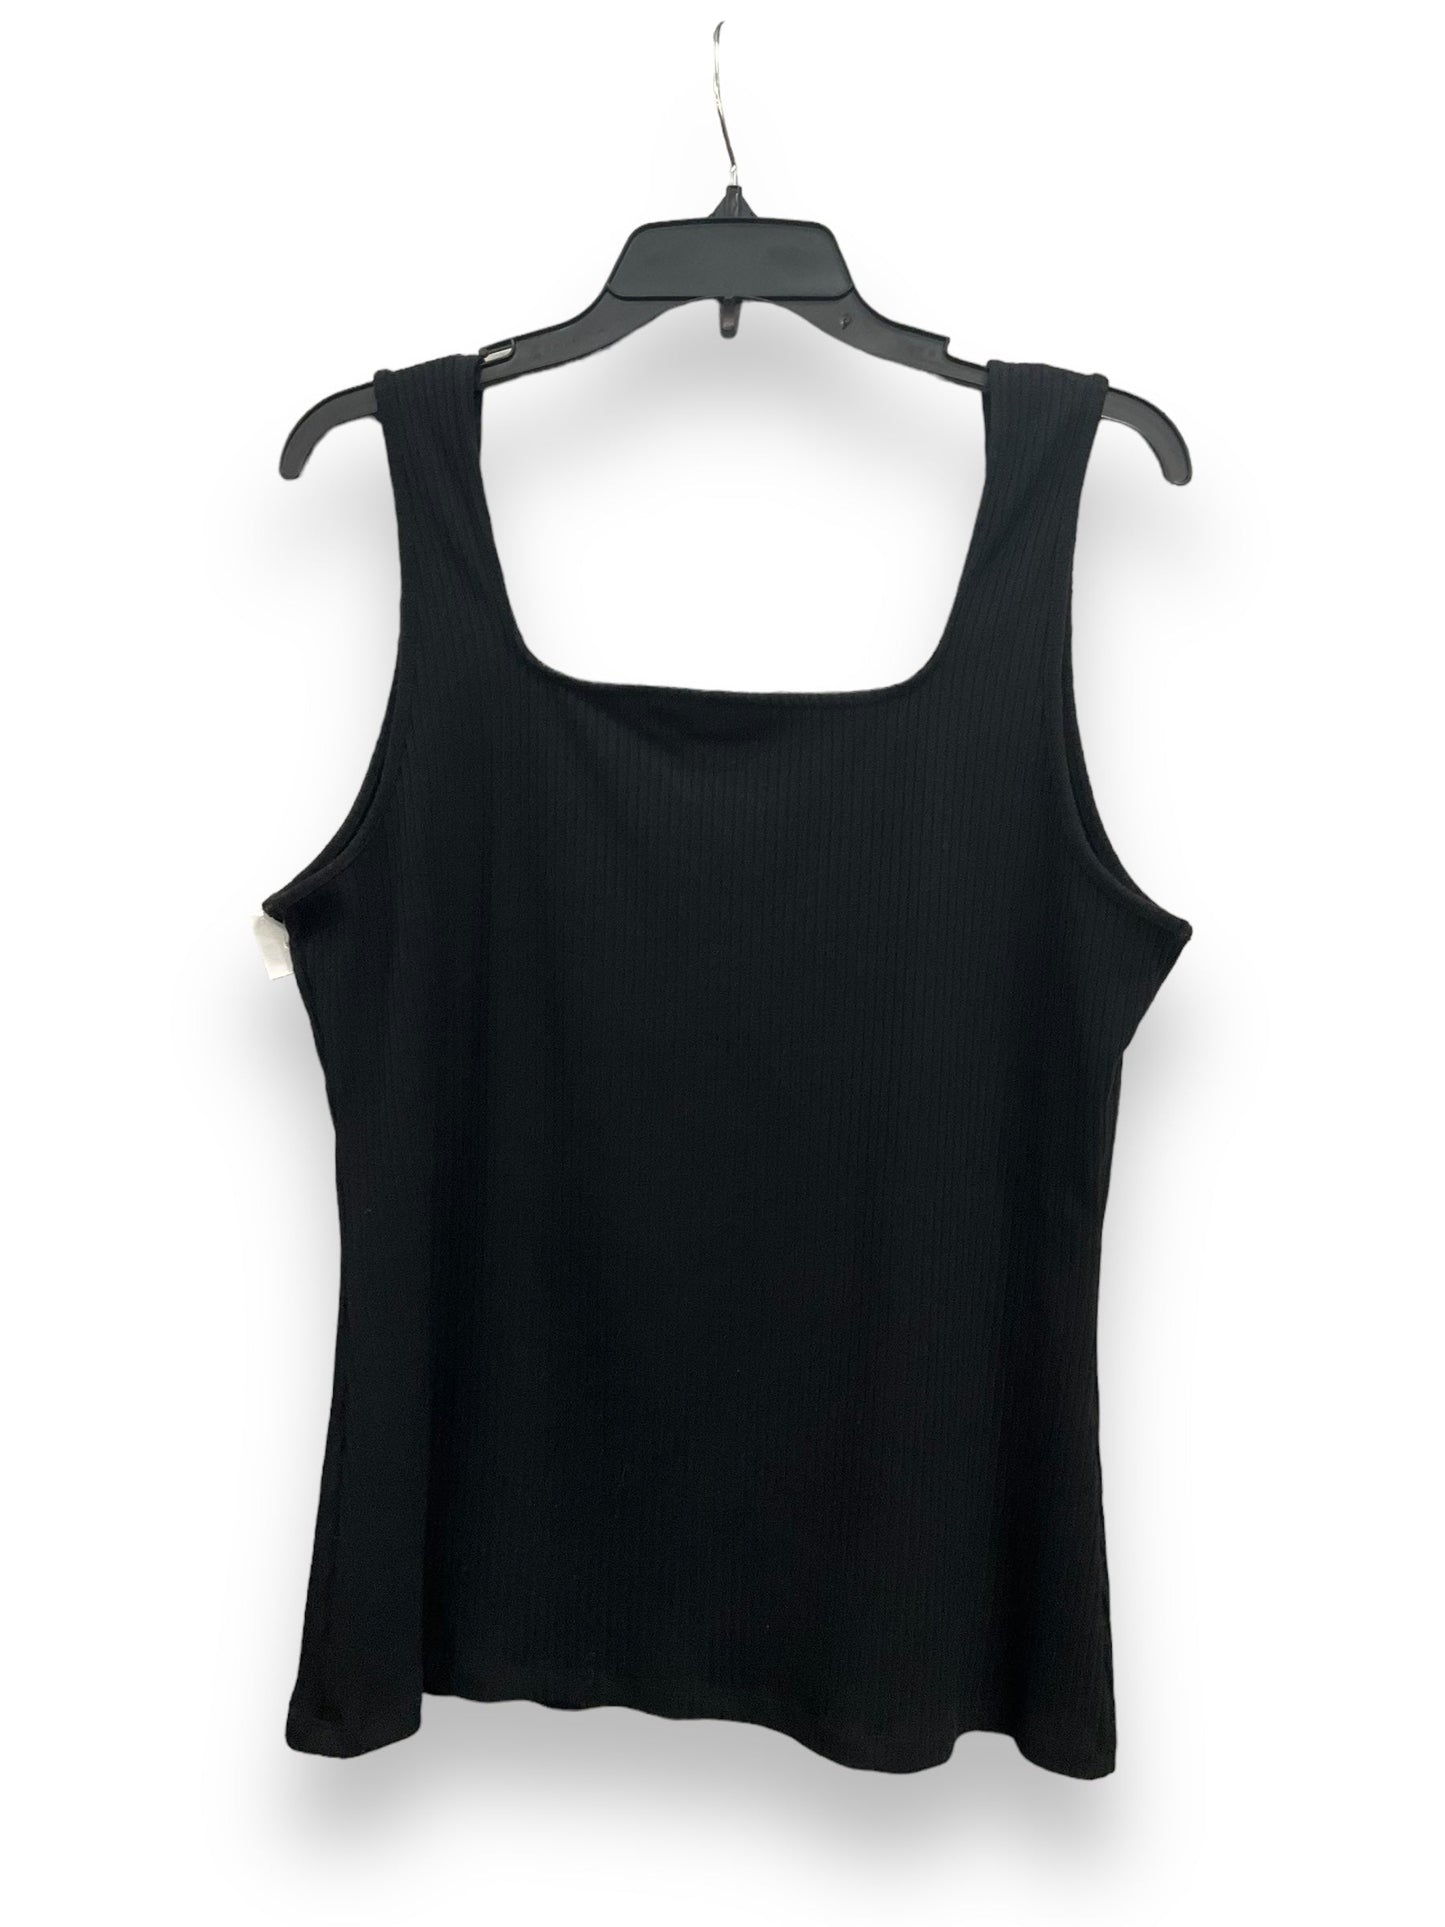 Black Top Short Sleeve Basic Inc, Size Xxl